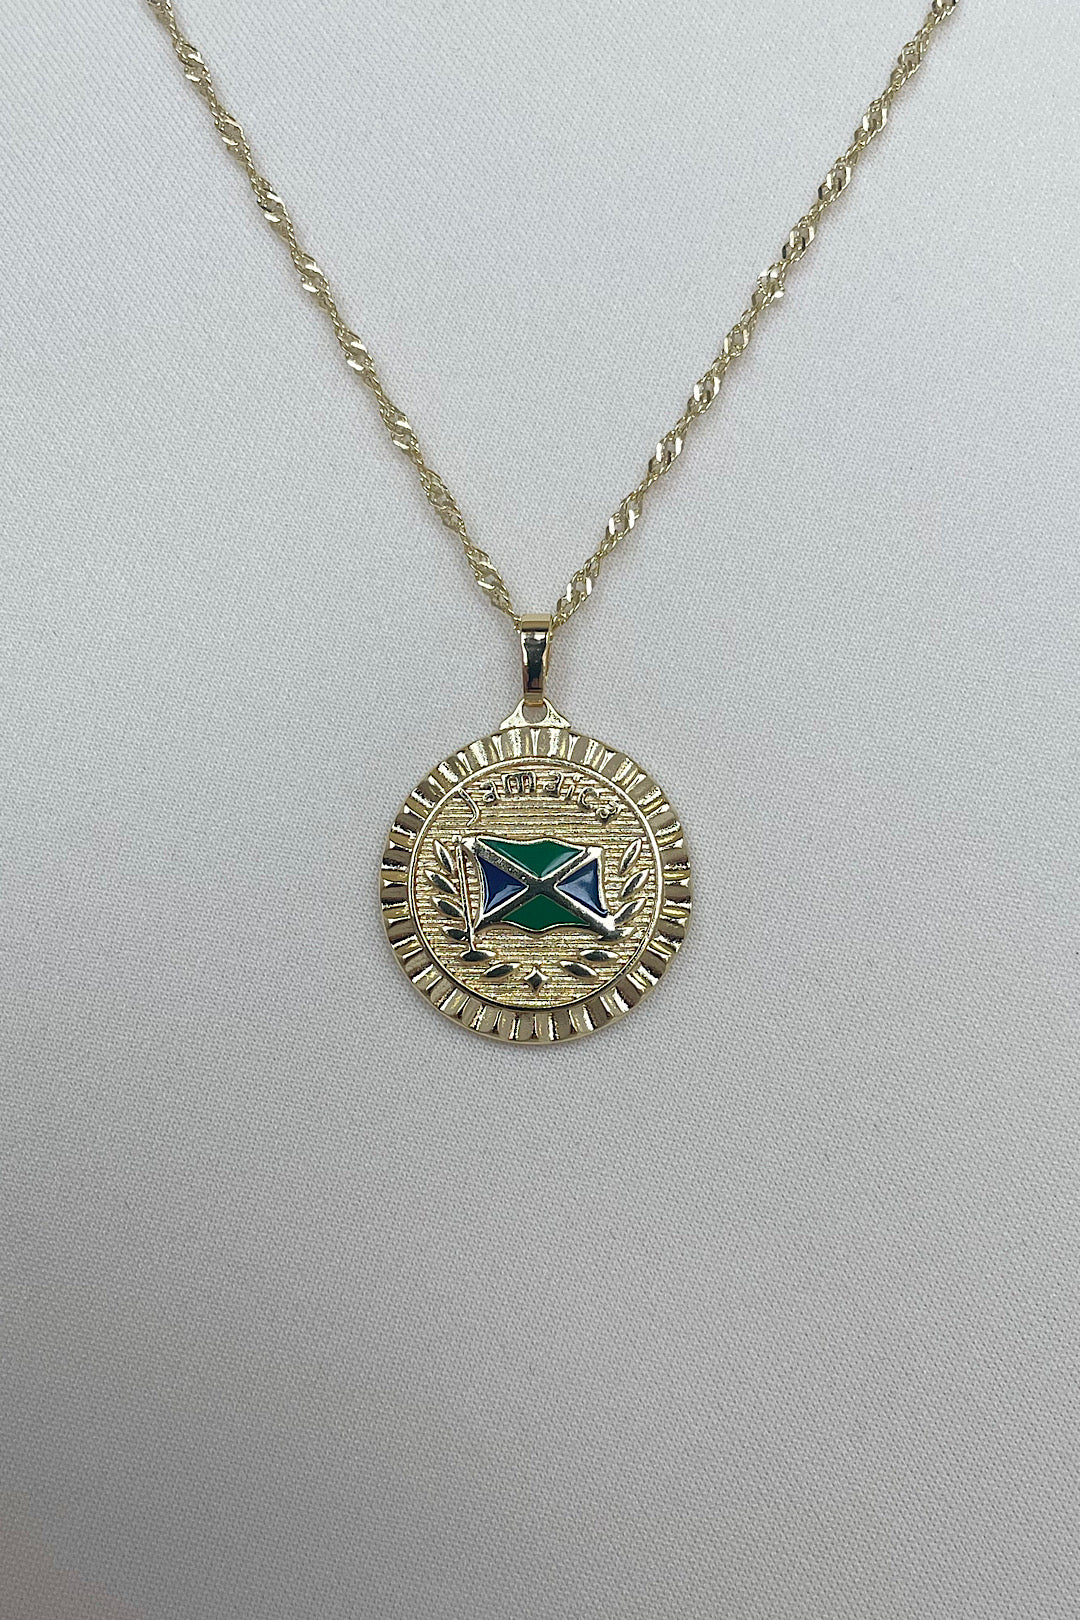 Jamaica flag Necklace